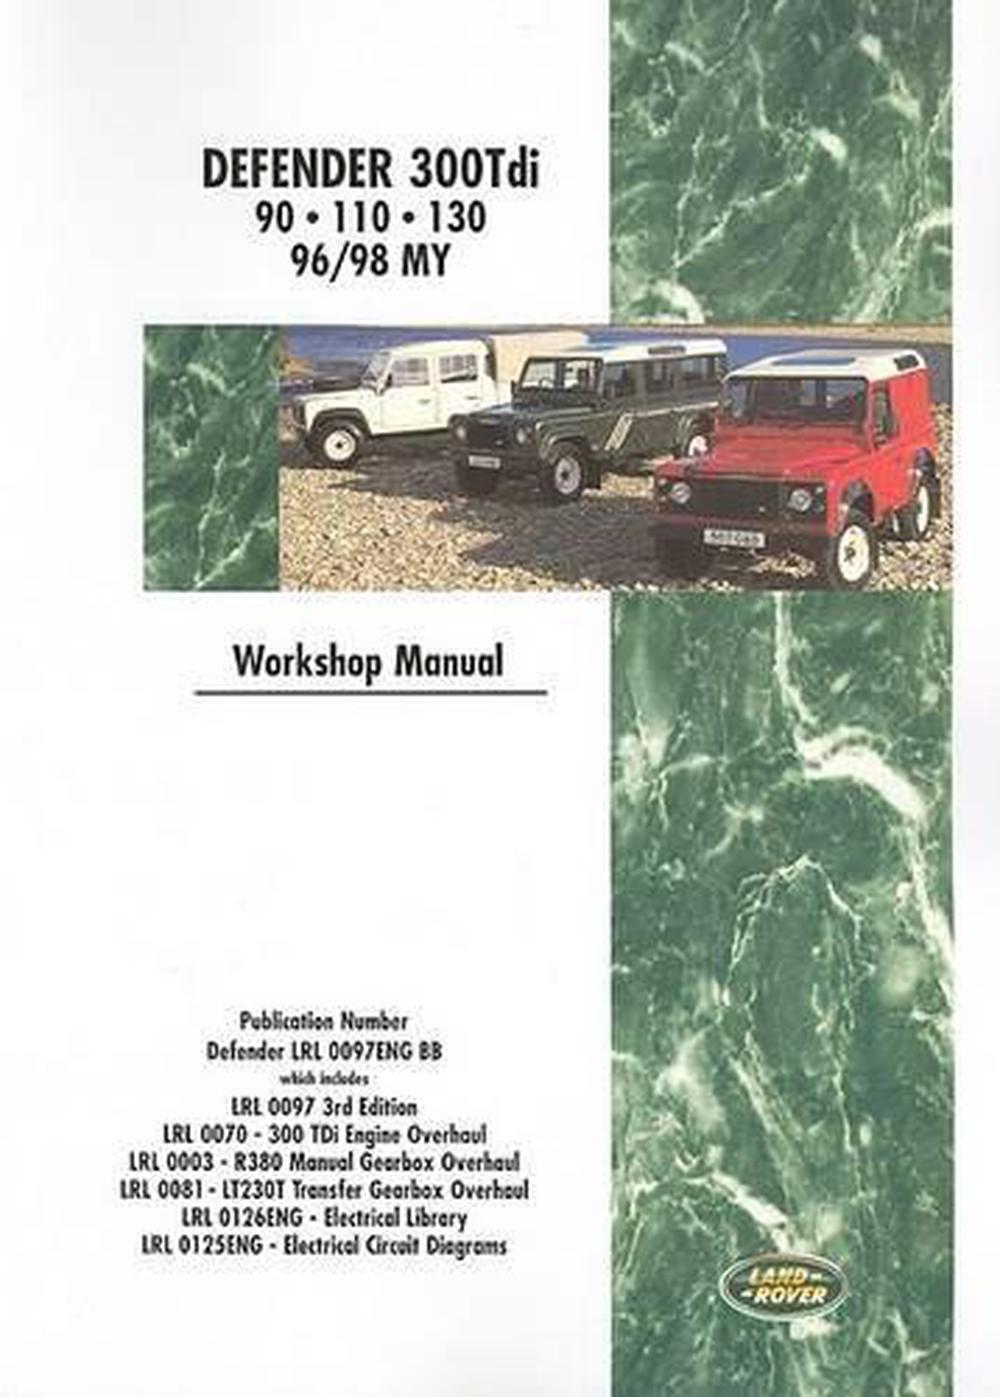 Land Rover Defender - 300 Tdi Workshop Manual 1996-1998: 90-110-130 by Brooklands Books Ltd